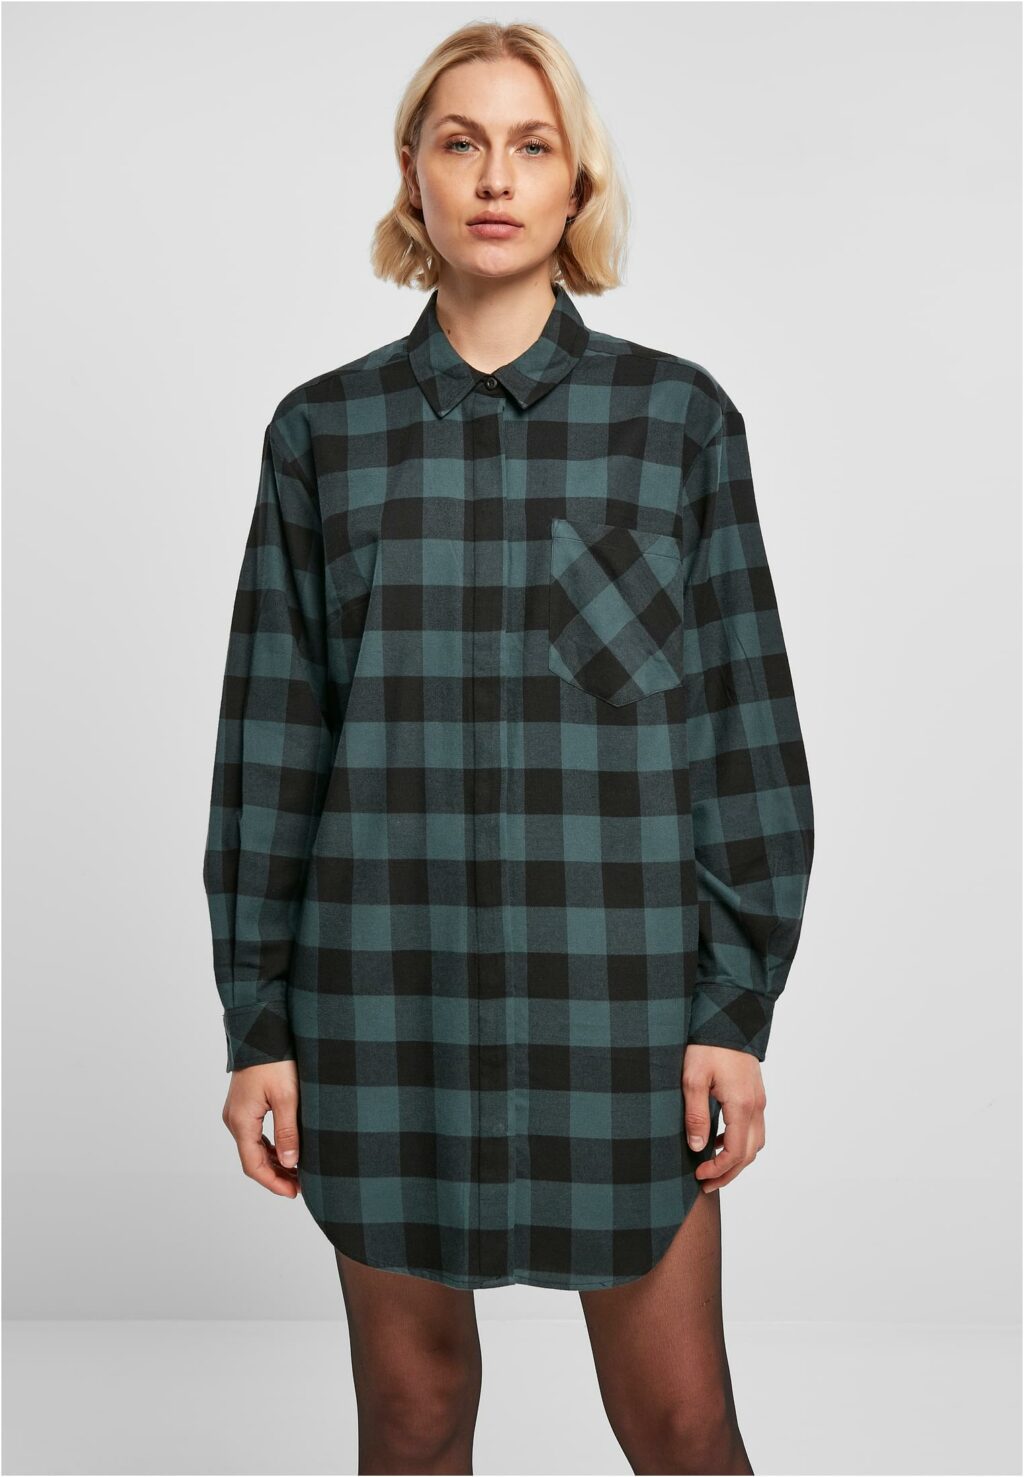 Urban Classics Ladies Oversized Check Flannel Shirt Dress jasper/black TB5087